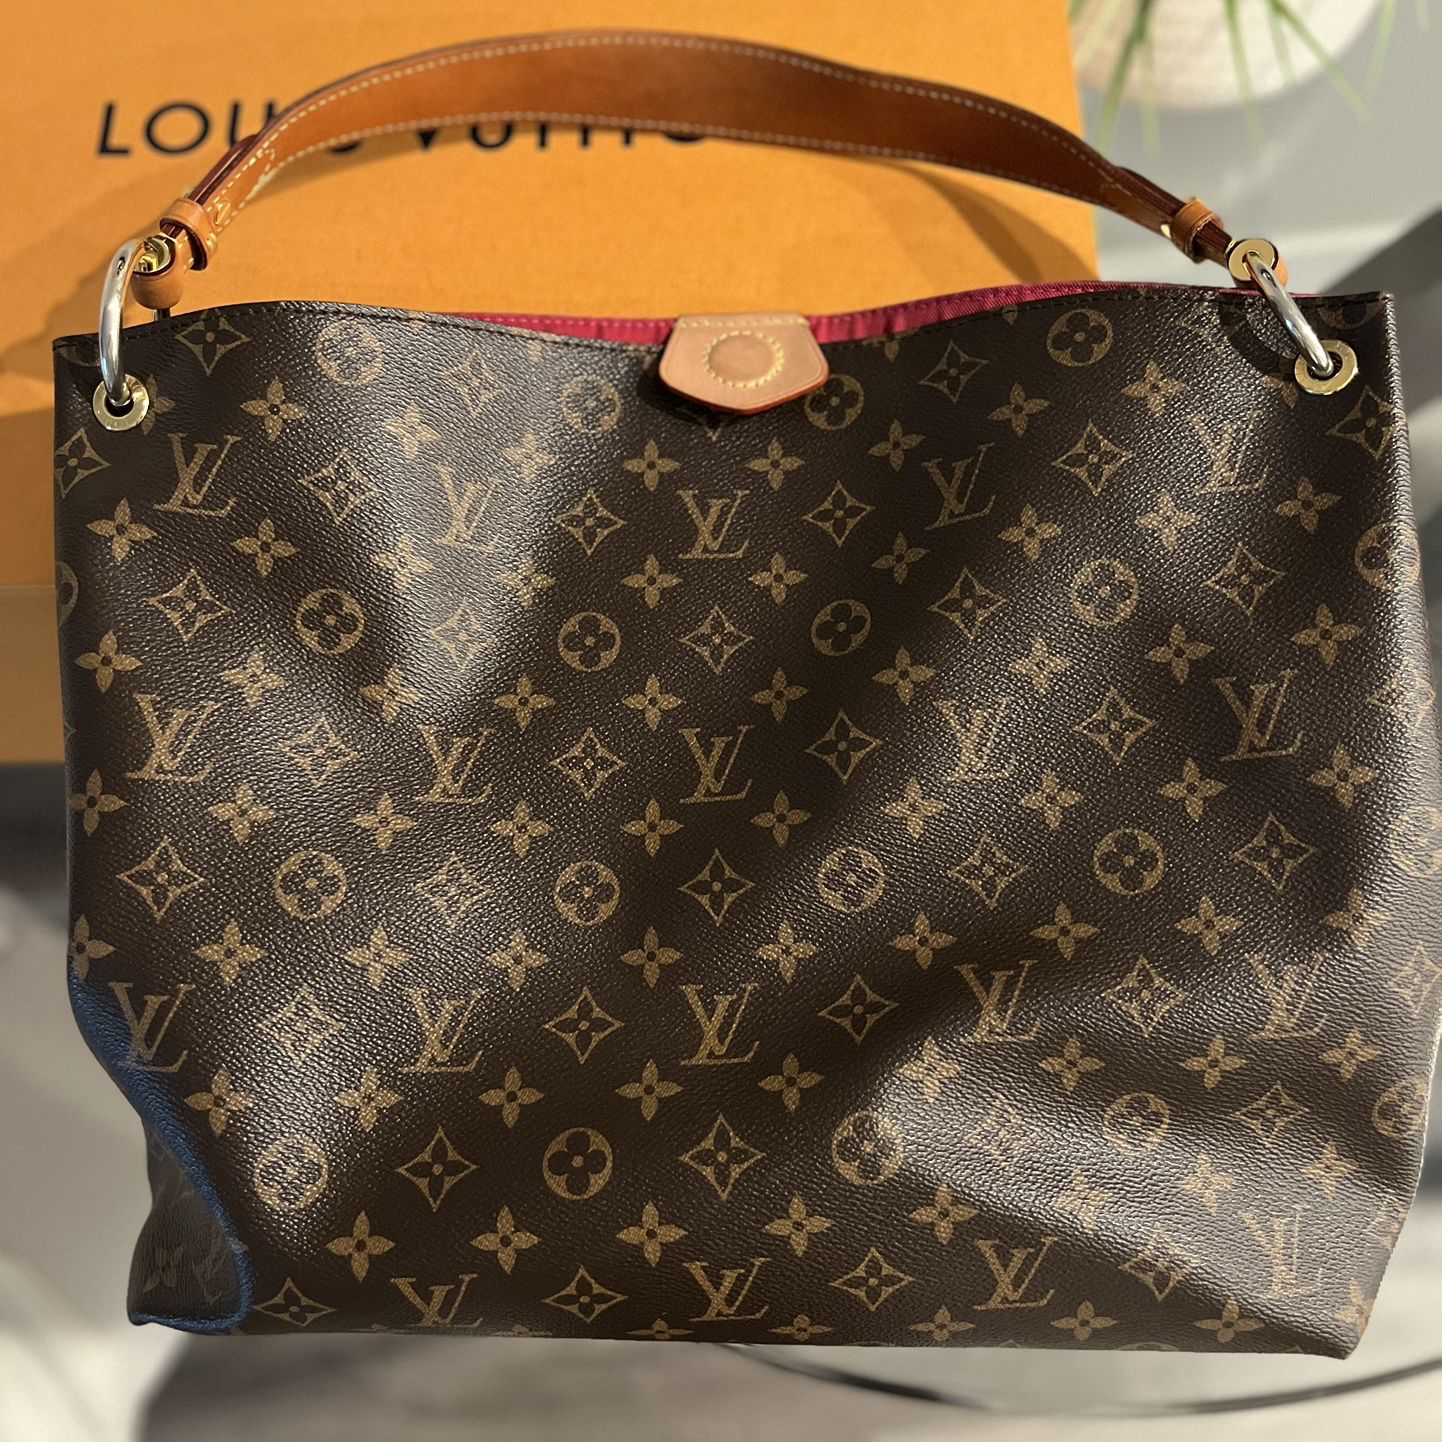 Authentic Louis Vuitton Bag Brown/Tan 